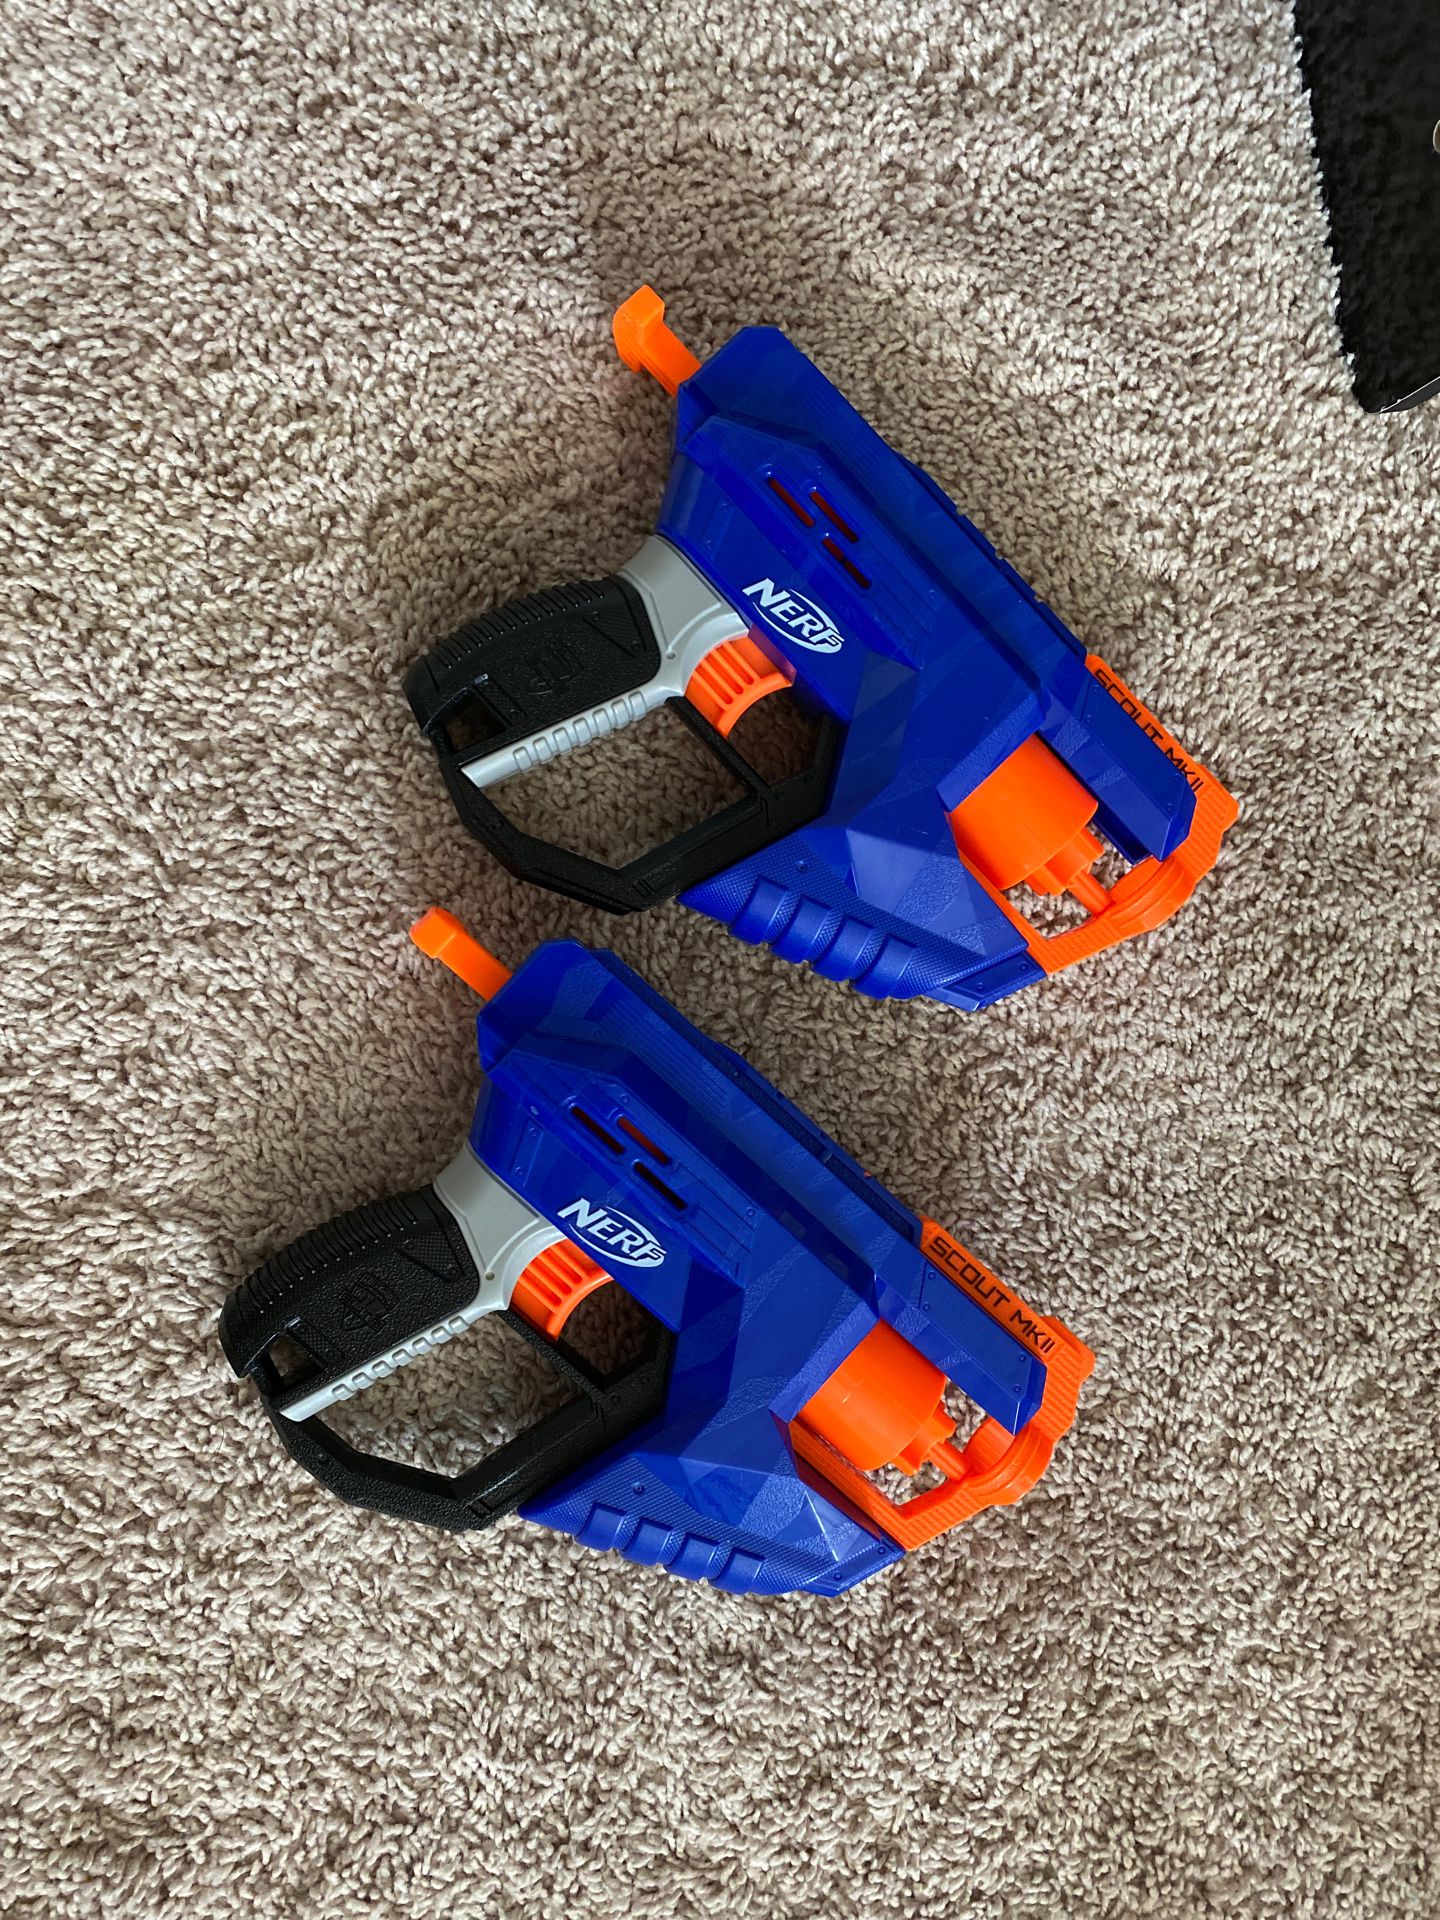 2 NERF GUNS for kids